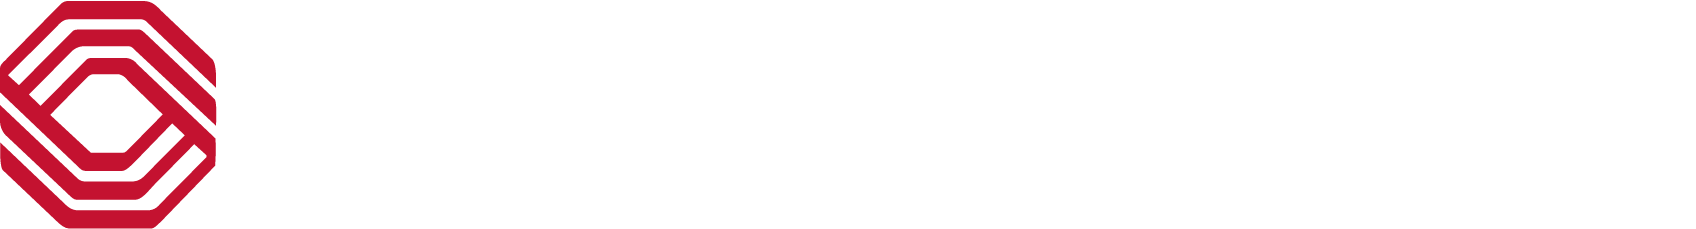 BOK Financial logo grand pour les fonds sombres (PNG transparent)